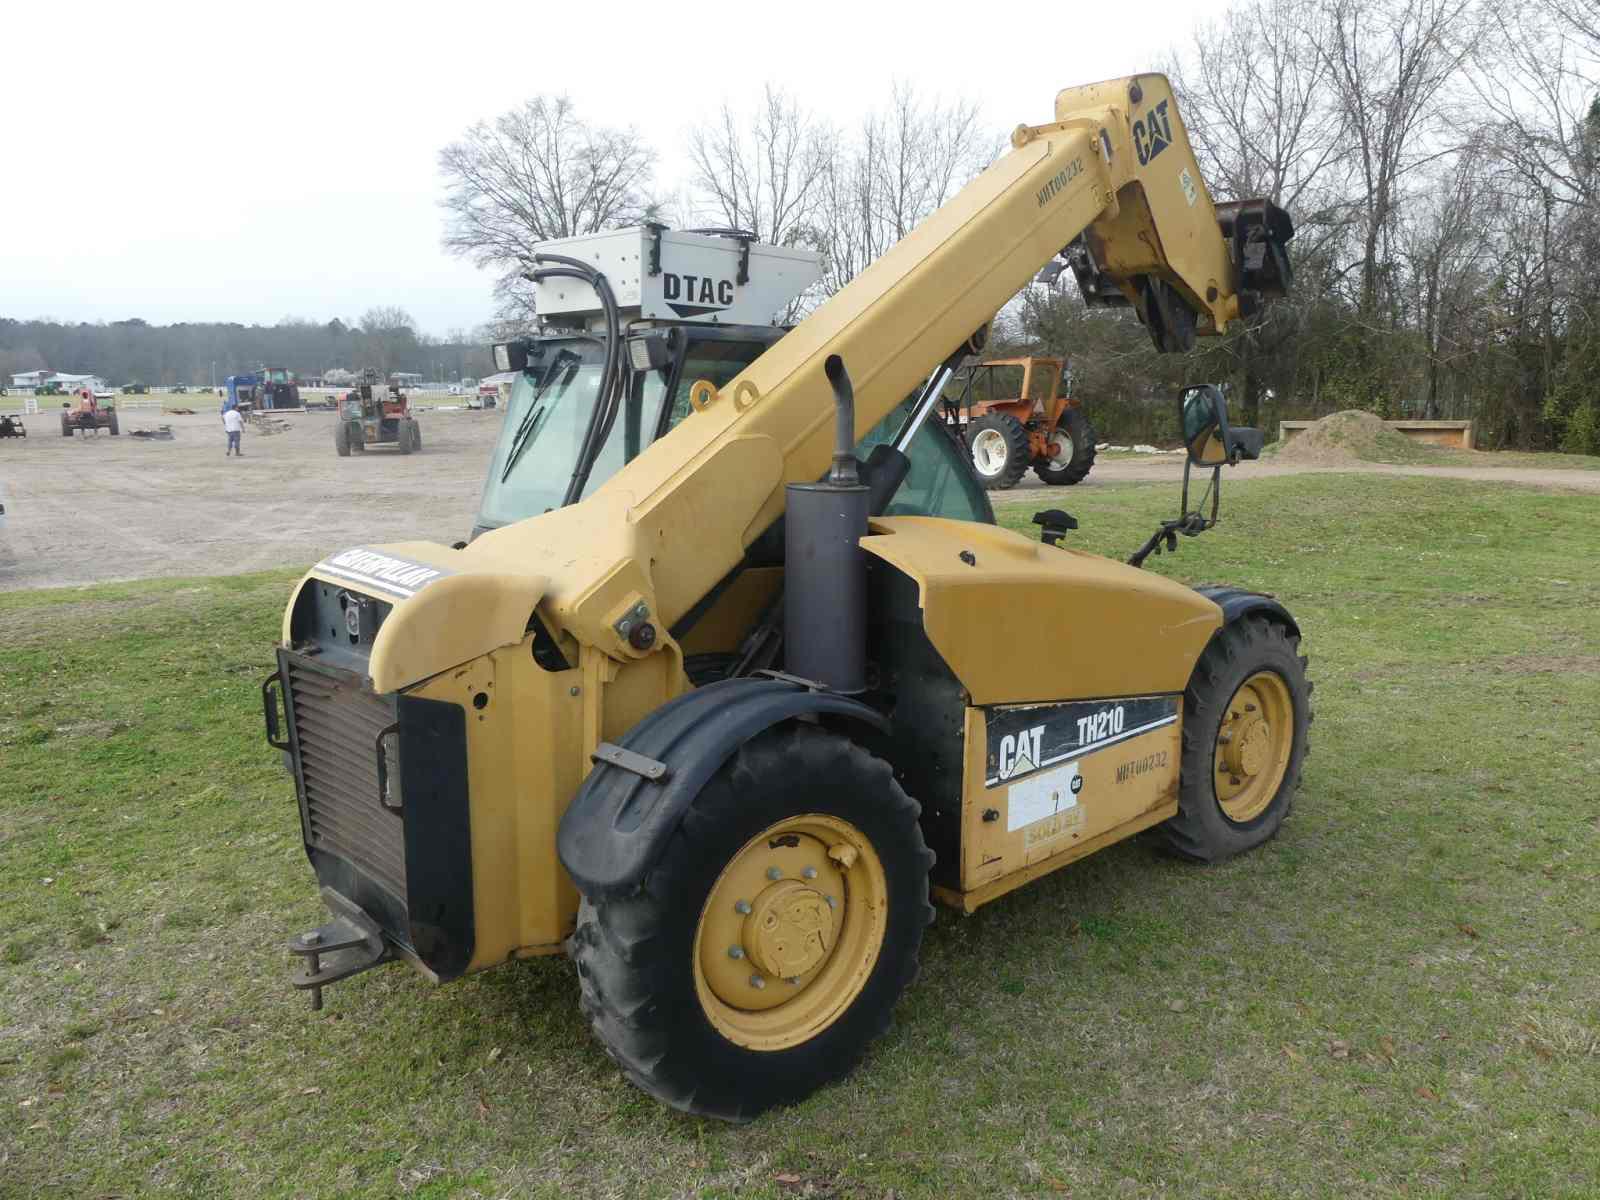 2005 Cat TH210 Telescopic Forklift, s/n MHT00232: C/A, 4800 lb. Cap., No Fo